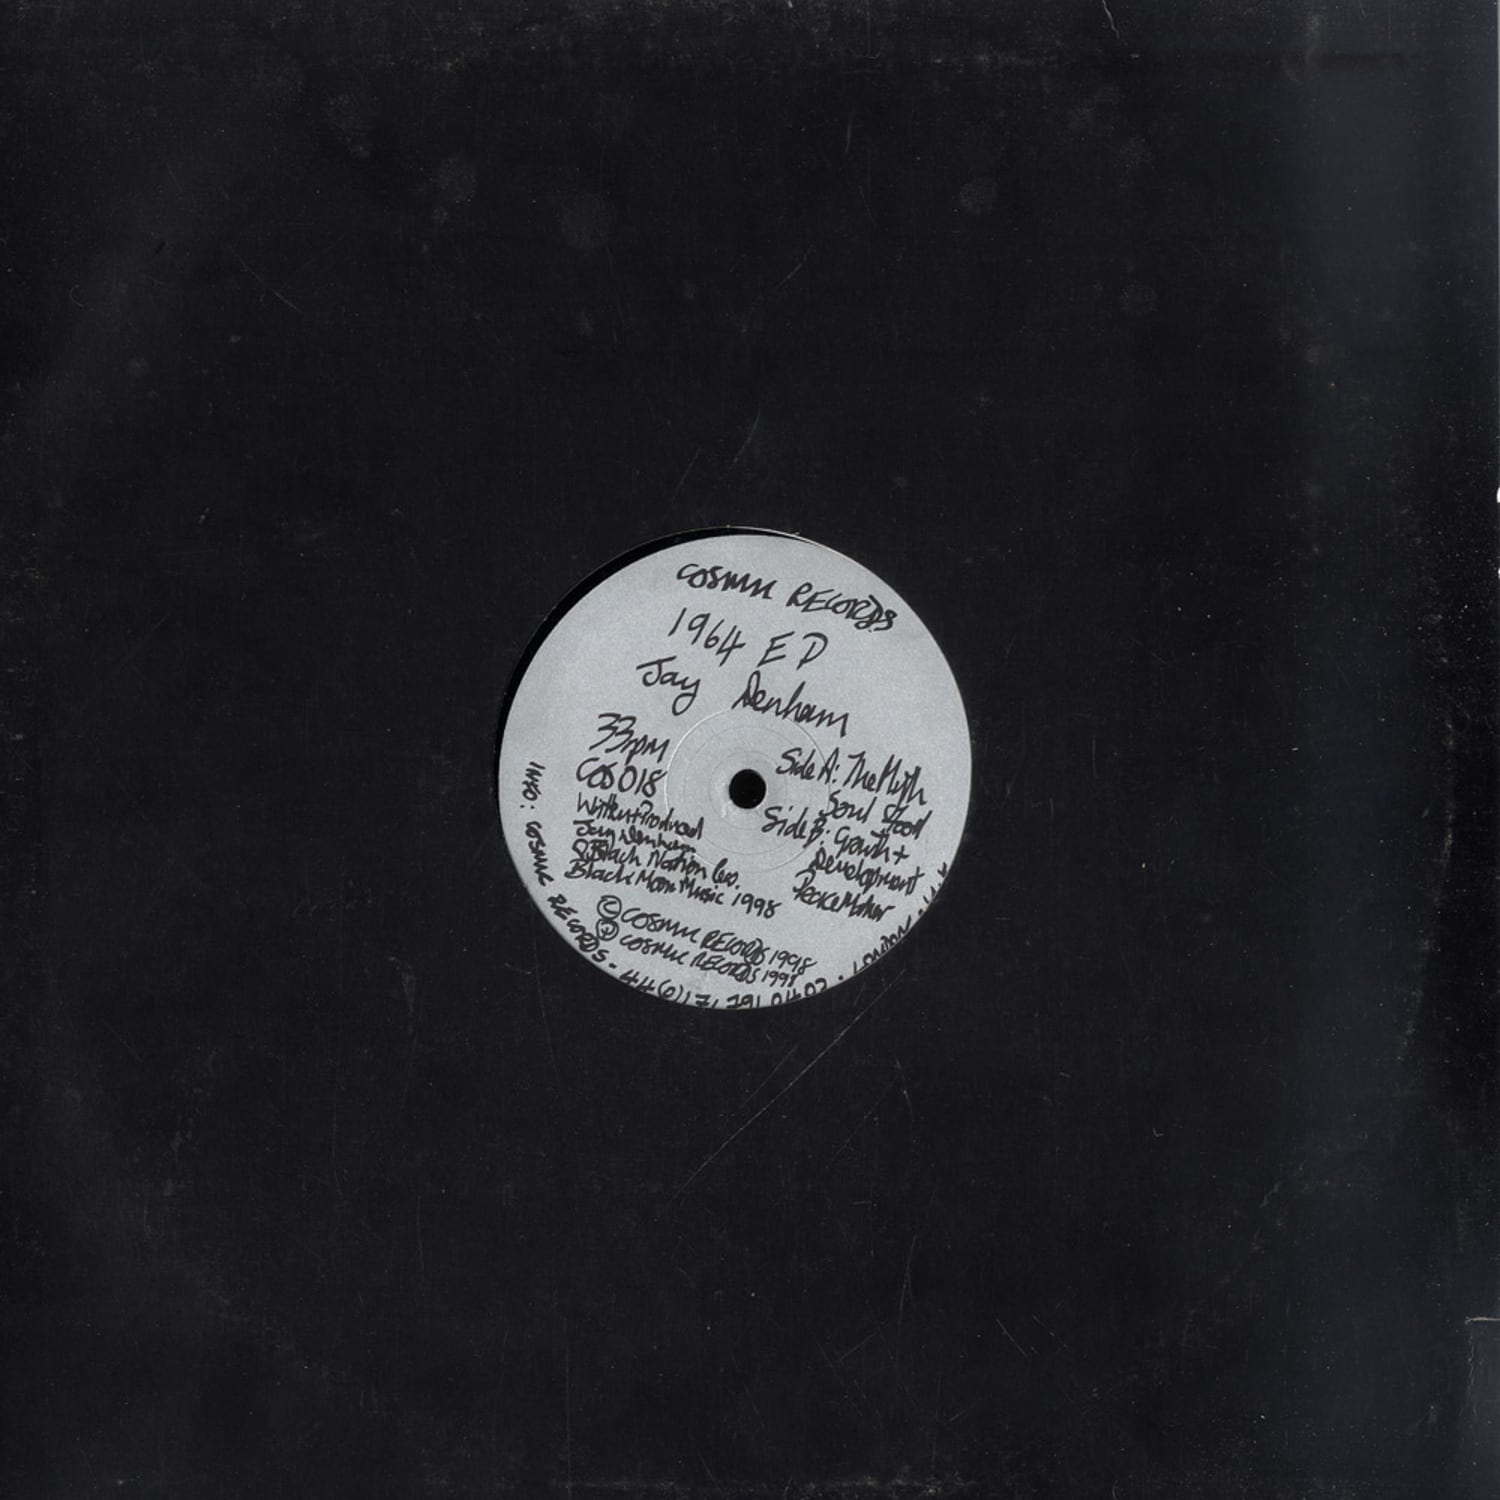 Jay Danham - 1964 EP